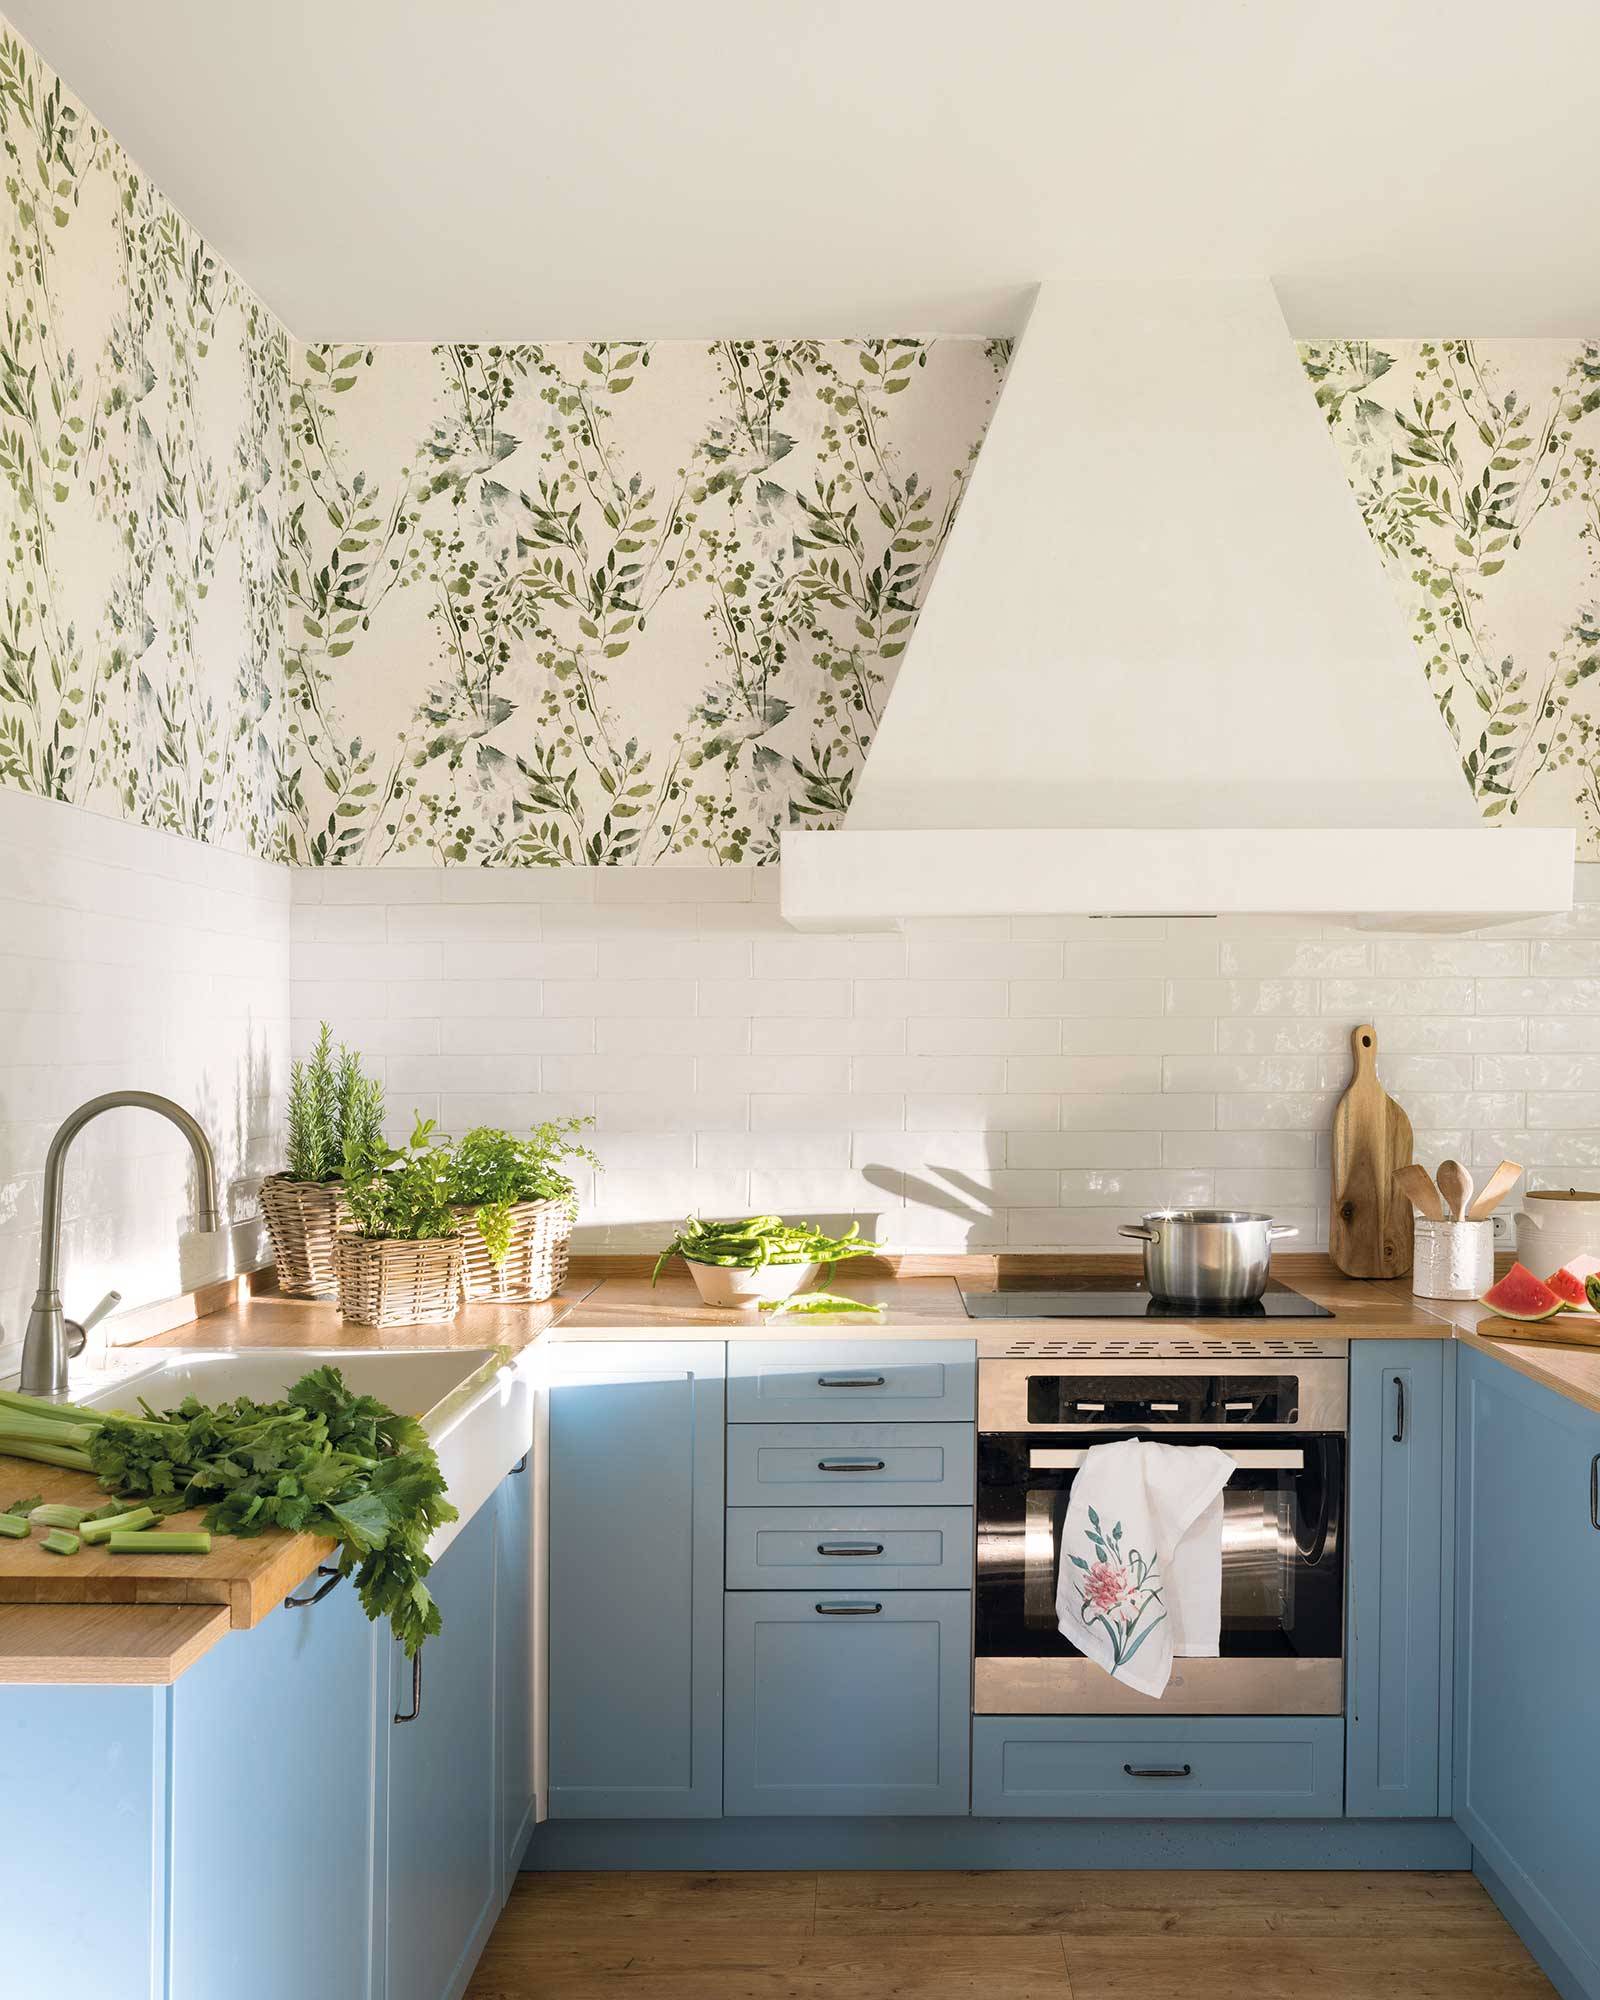 Cocina rústica moderna con los muebles azules y papel pintado floral. 